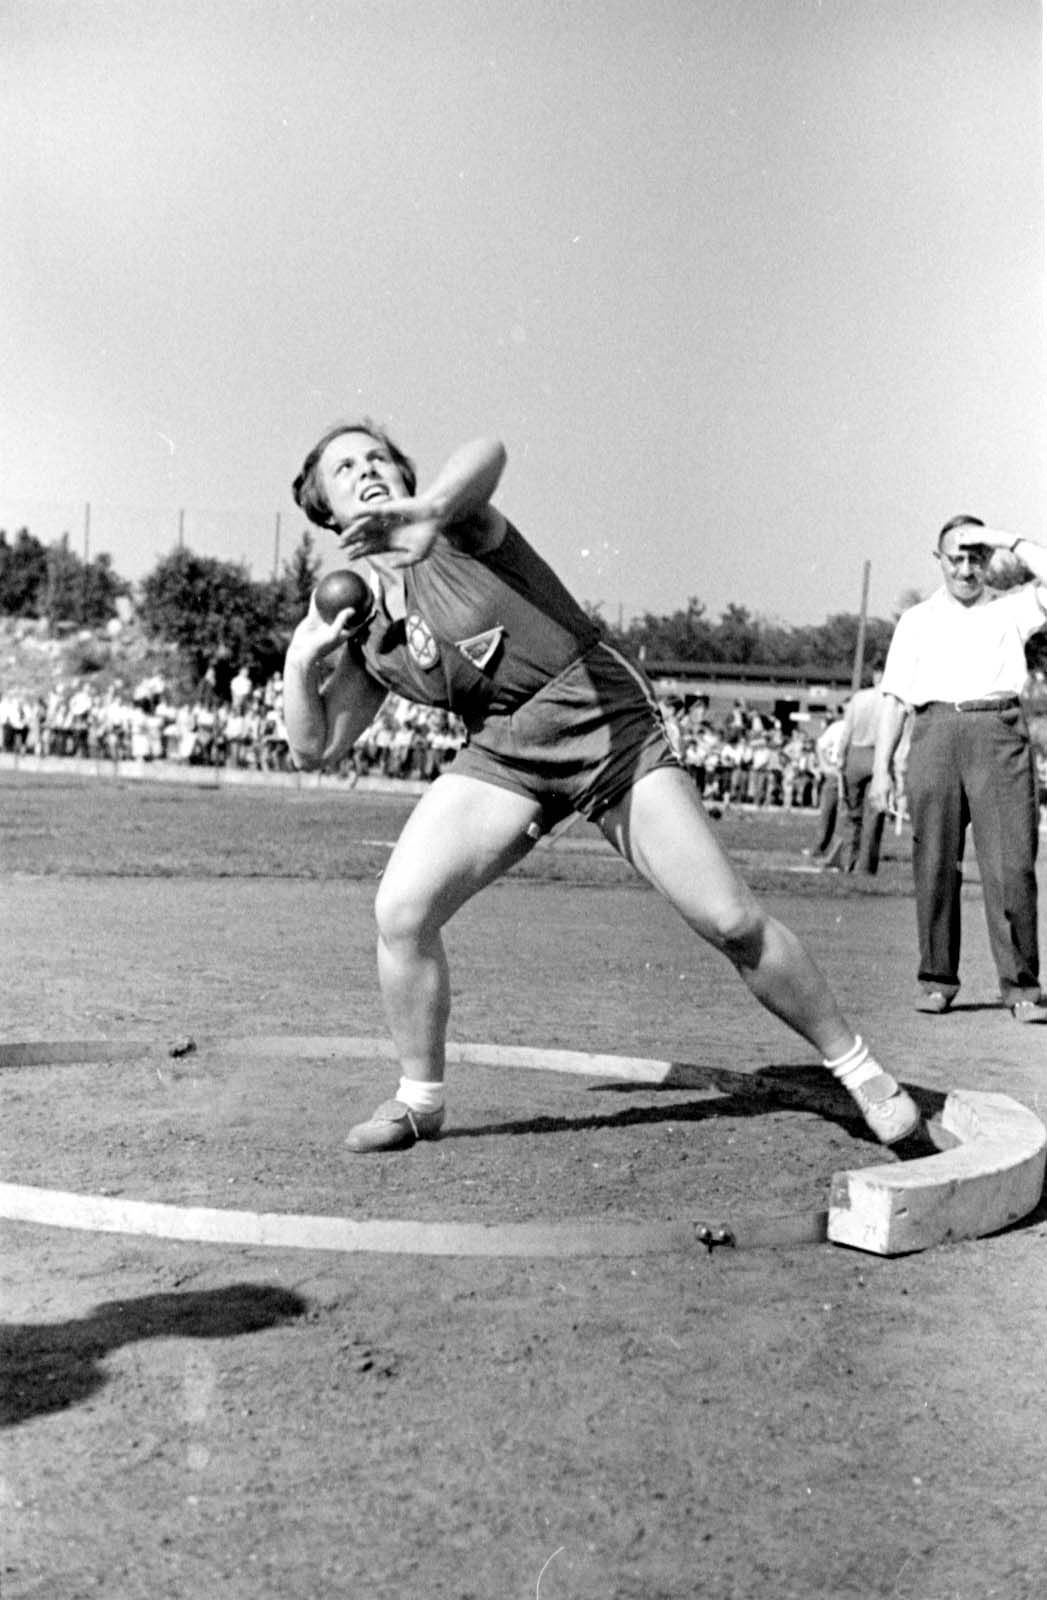 ברלין, גרמניה, 1937, סלמה שולמן (Selma Schulmann) בתחרות הדיפת כדור ברזל במסגרת תחרויות הספורט הבינלאומיות של אגודת בר כוכבא, בהשתתפות הכח וינה. התחרויות התקיימו במגרש גרונוואלד (Grunewald) וכללו כדורגל, כדורעף והוקי